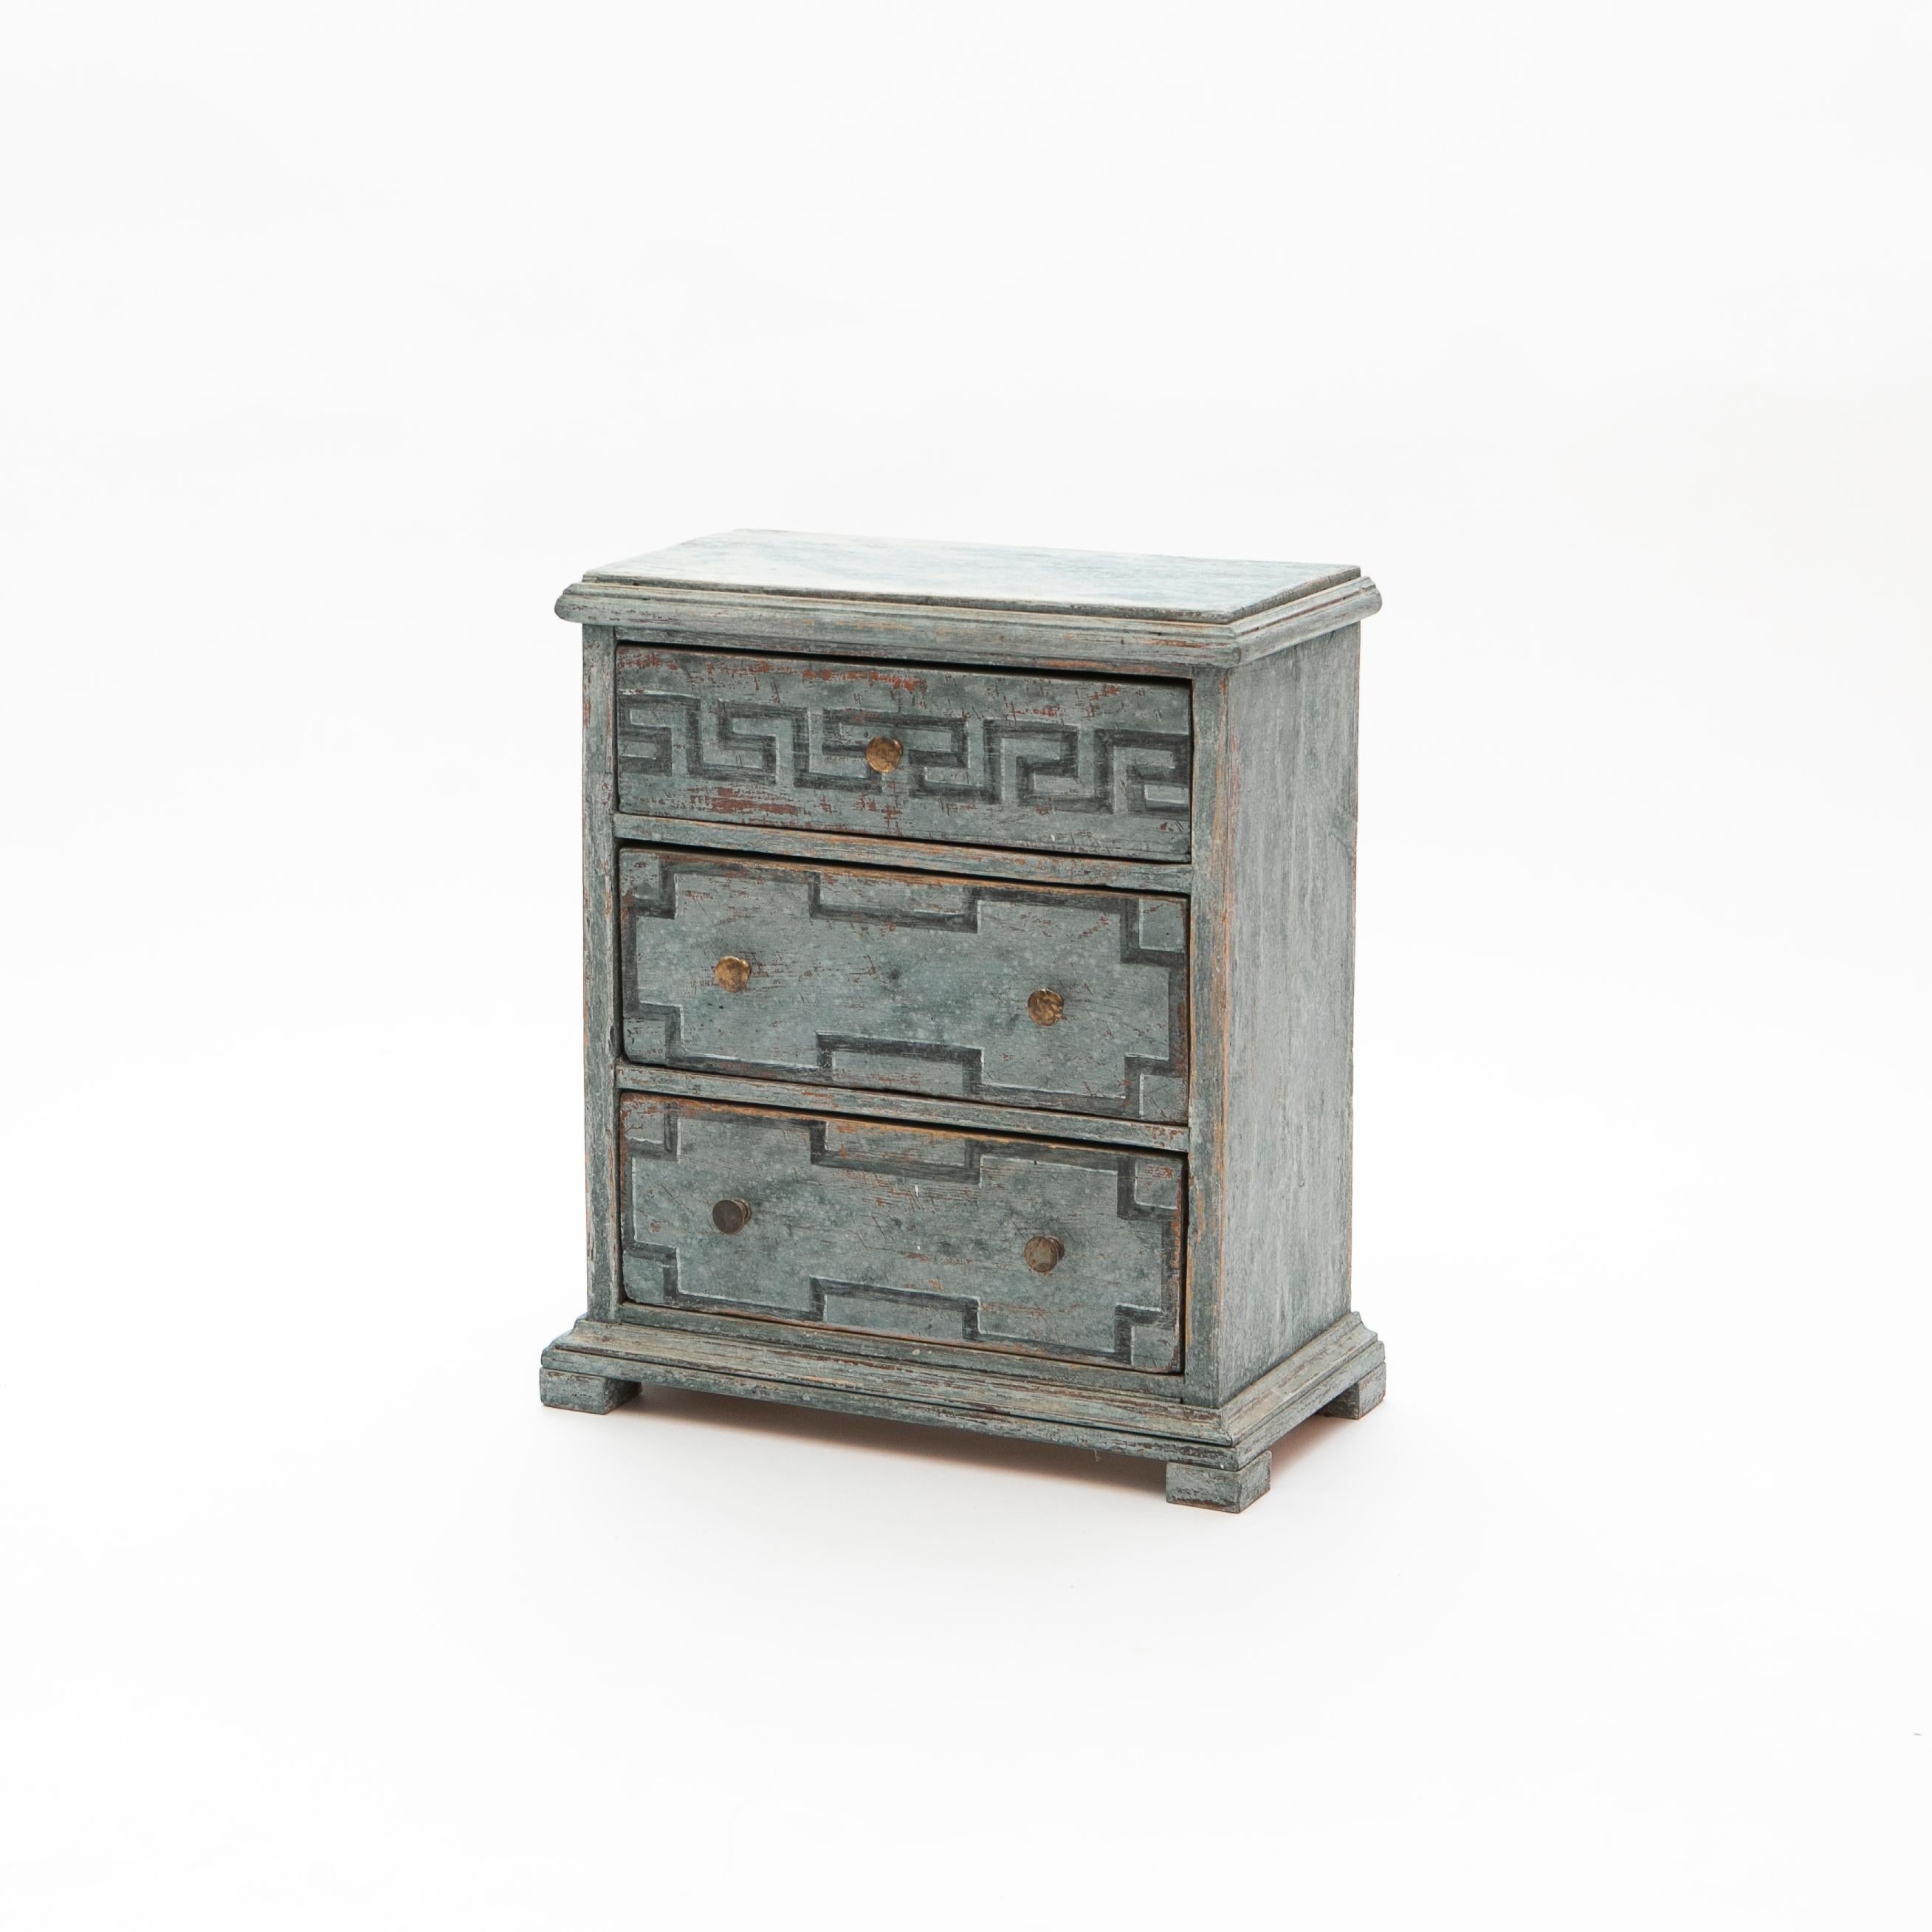 Kleine schwedische Kommode oder Nachttisch aus blau lackiertem Holz. Höhe: 47 cm / 18,5 inch.
Diese kleine Kommode aus dem frühen 19. Jahrhundert besteht aus drei Schubladen, wobei die obere Schublade mit einem gemalten blauen Mäanderdekor verziert